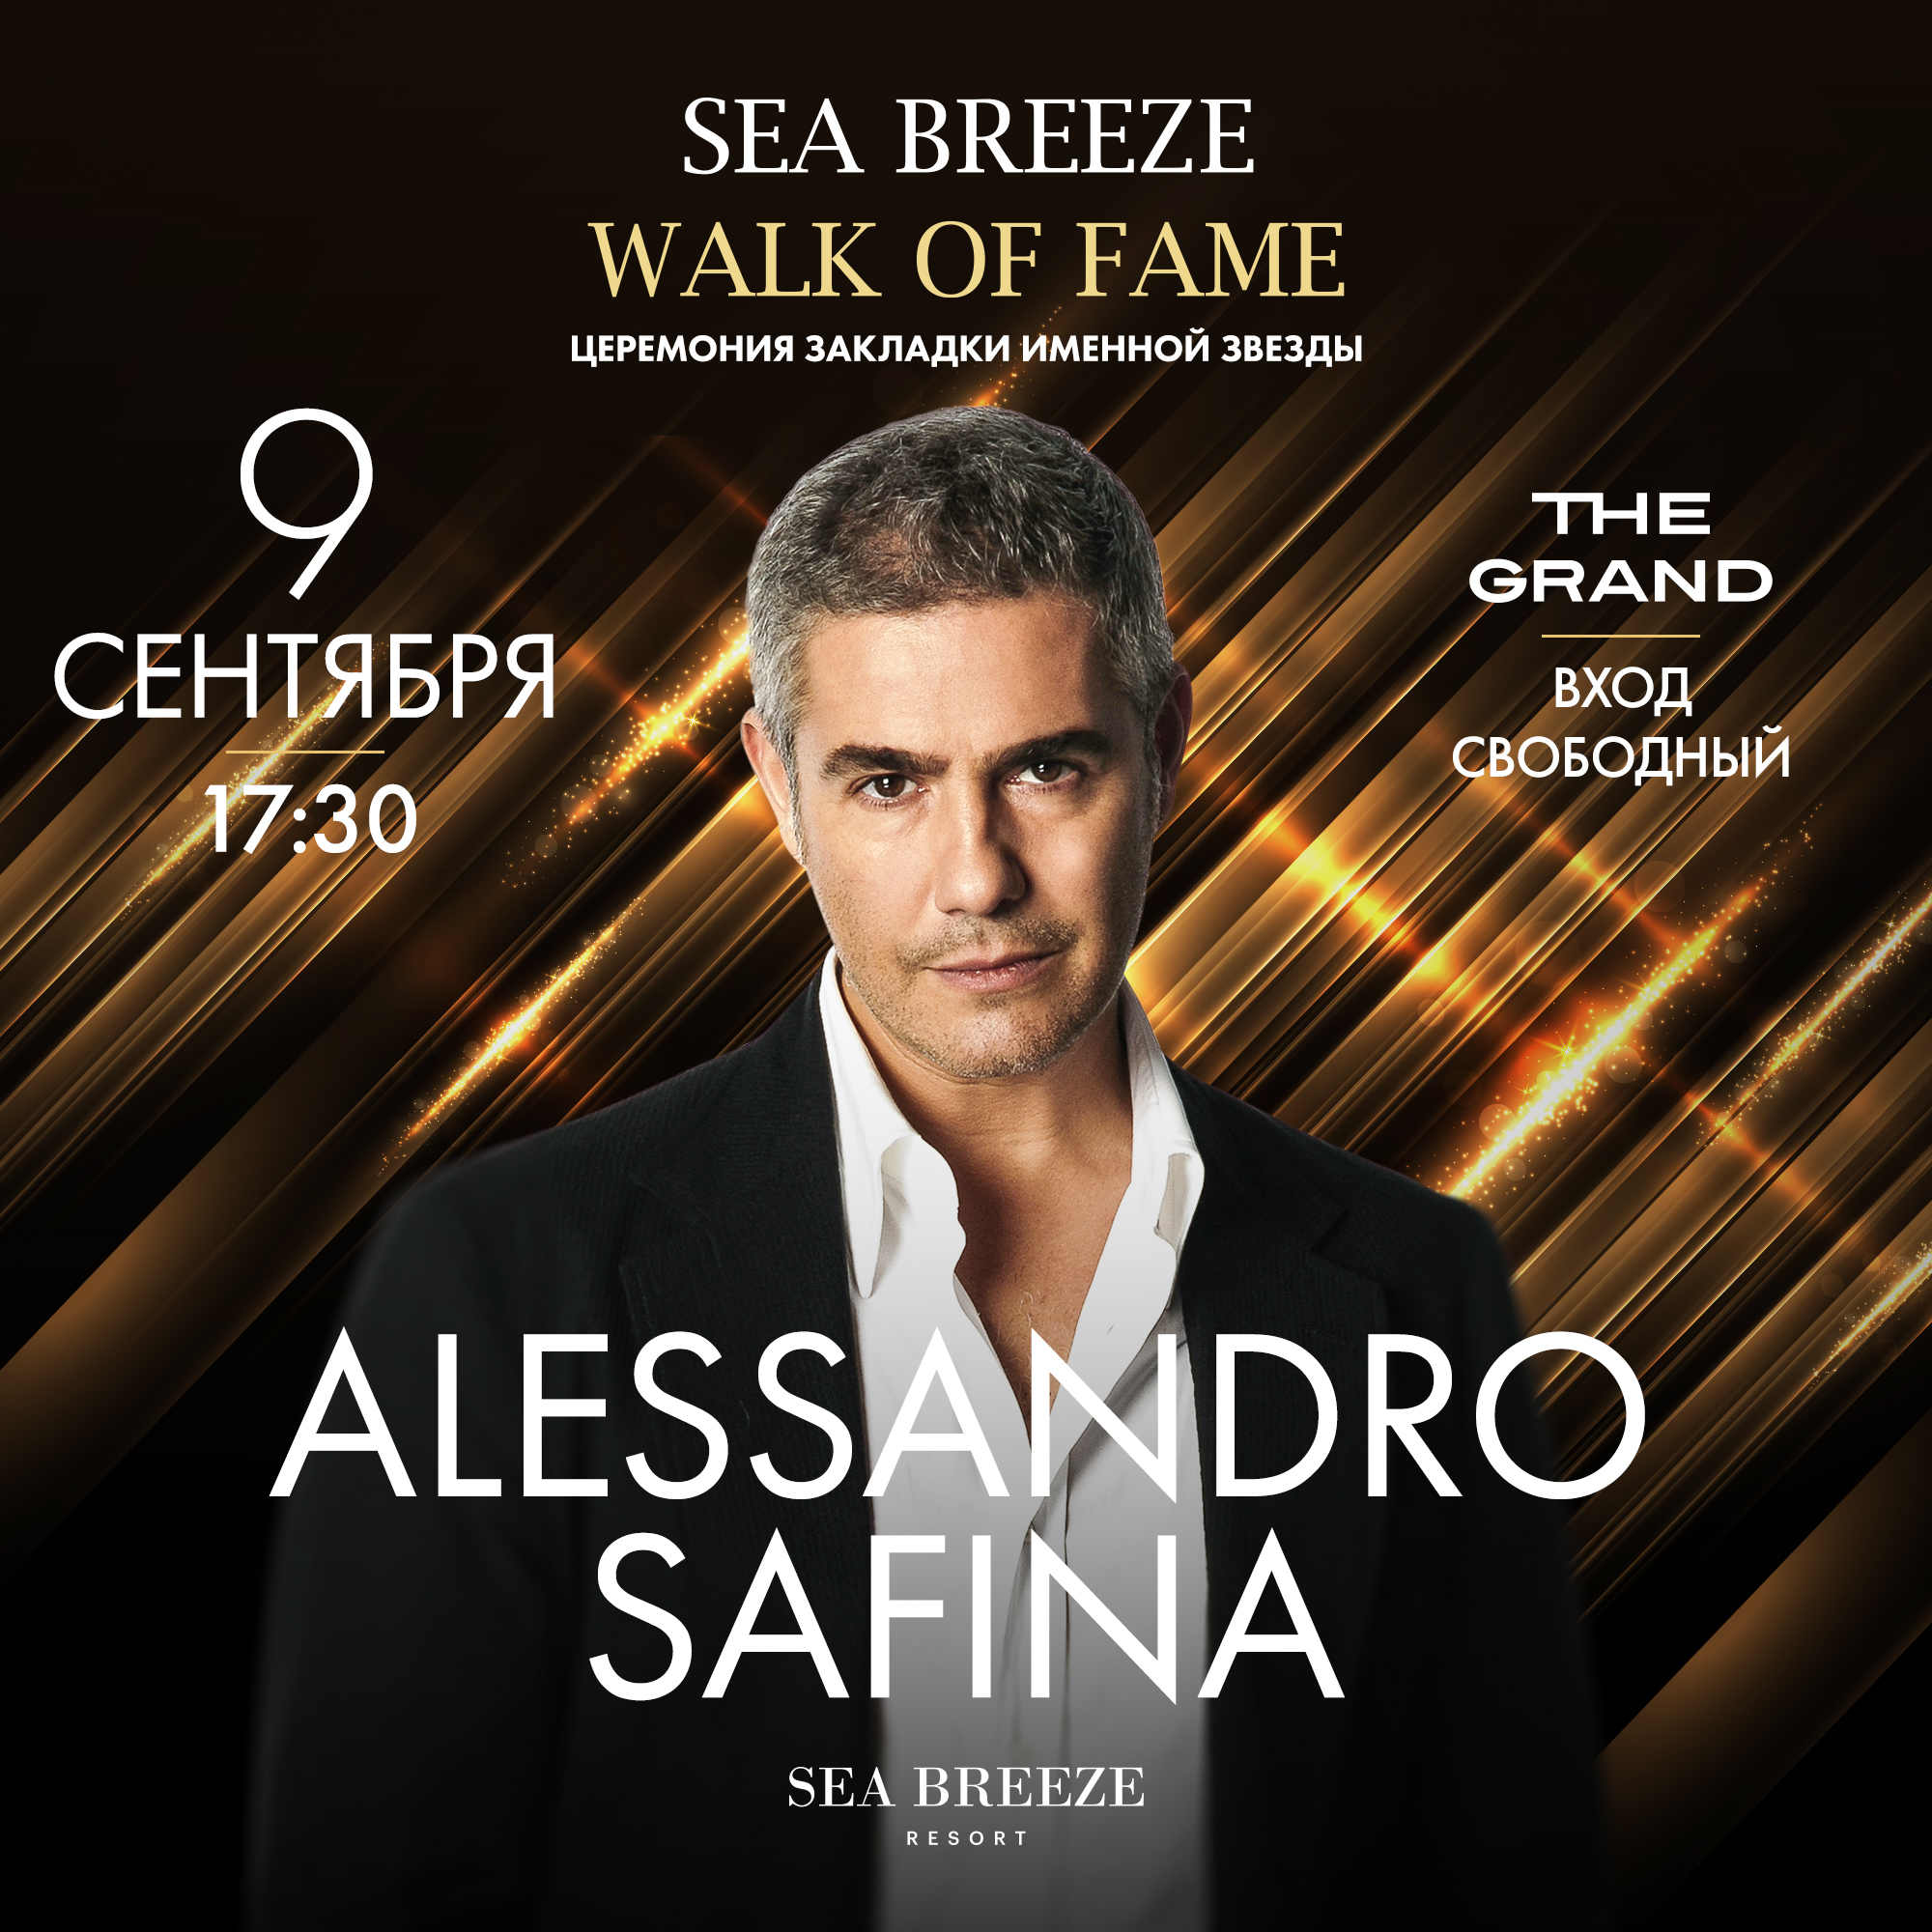 9 сентября в Sea Breeze Resort пройдет торжественная церемония закладки звезды всемирно известного итальянского тенора Алессандро Сафина